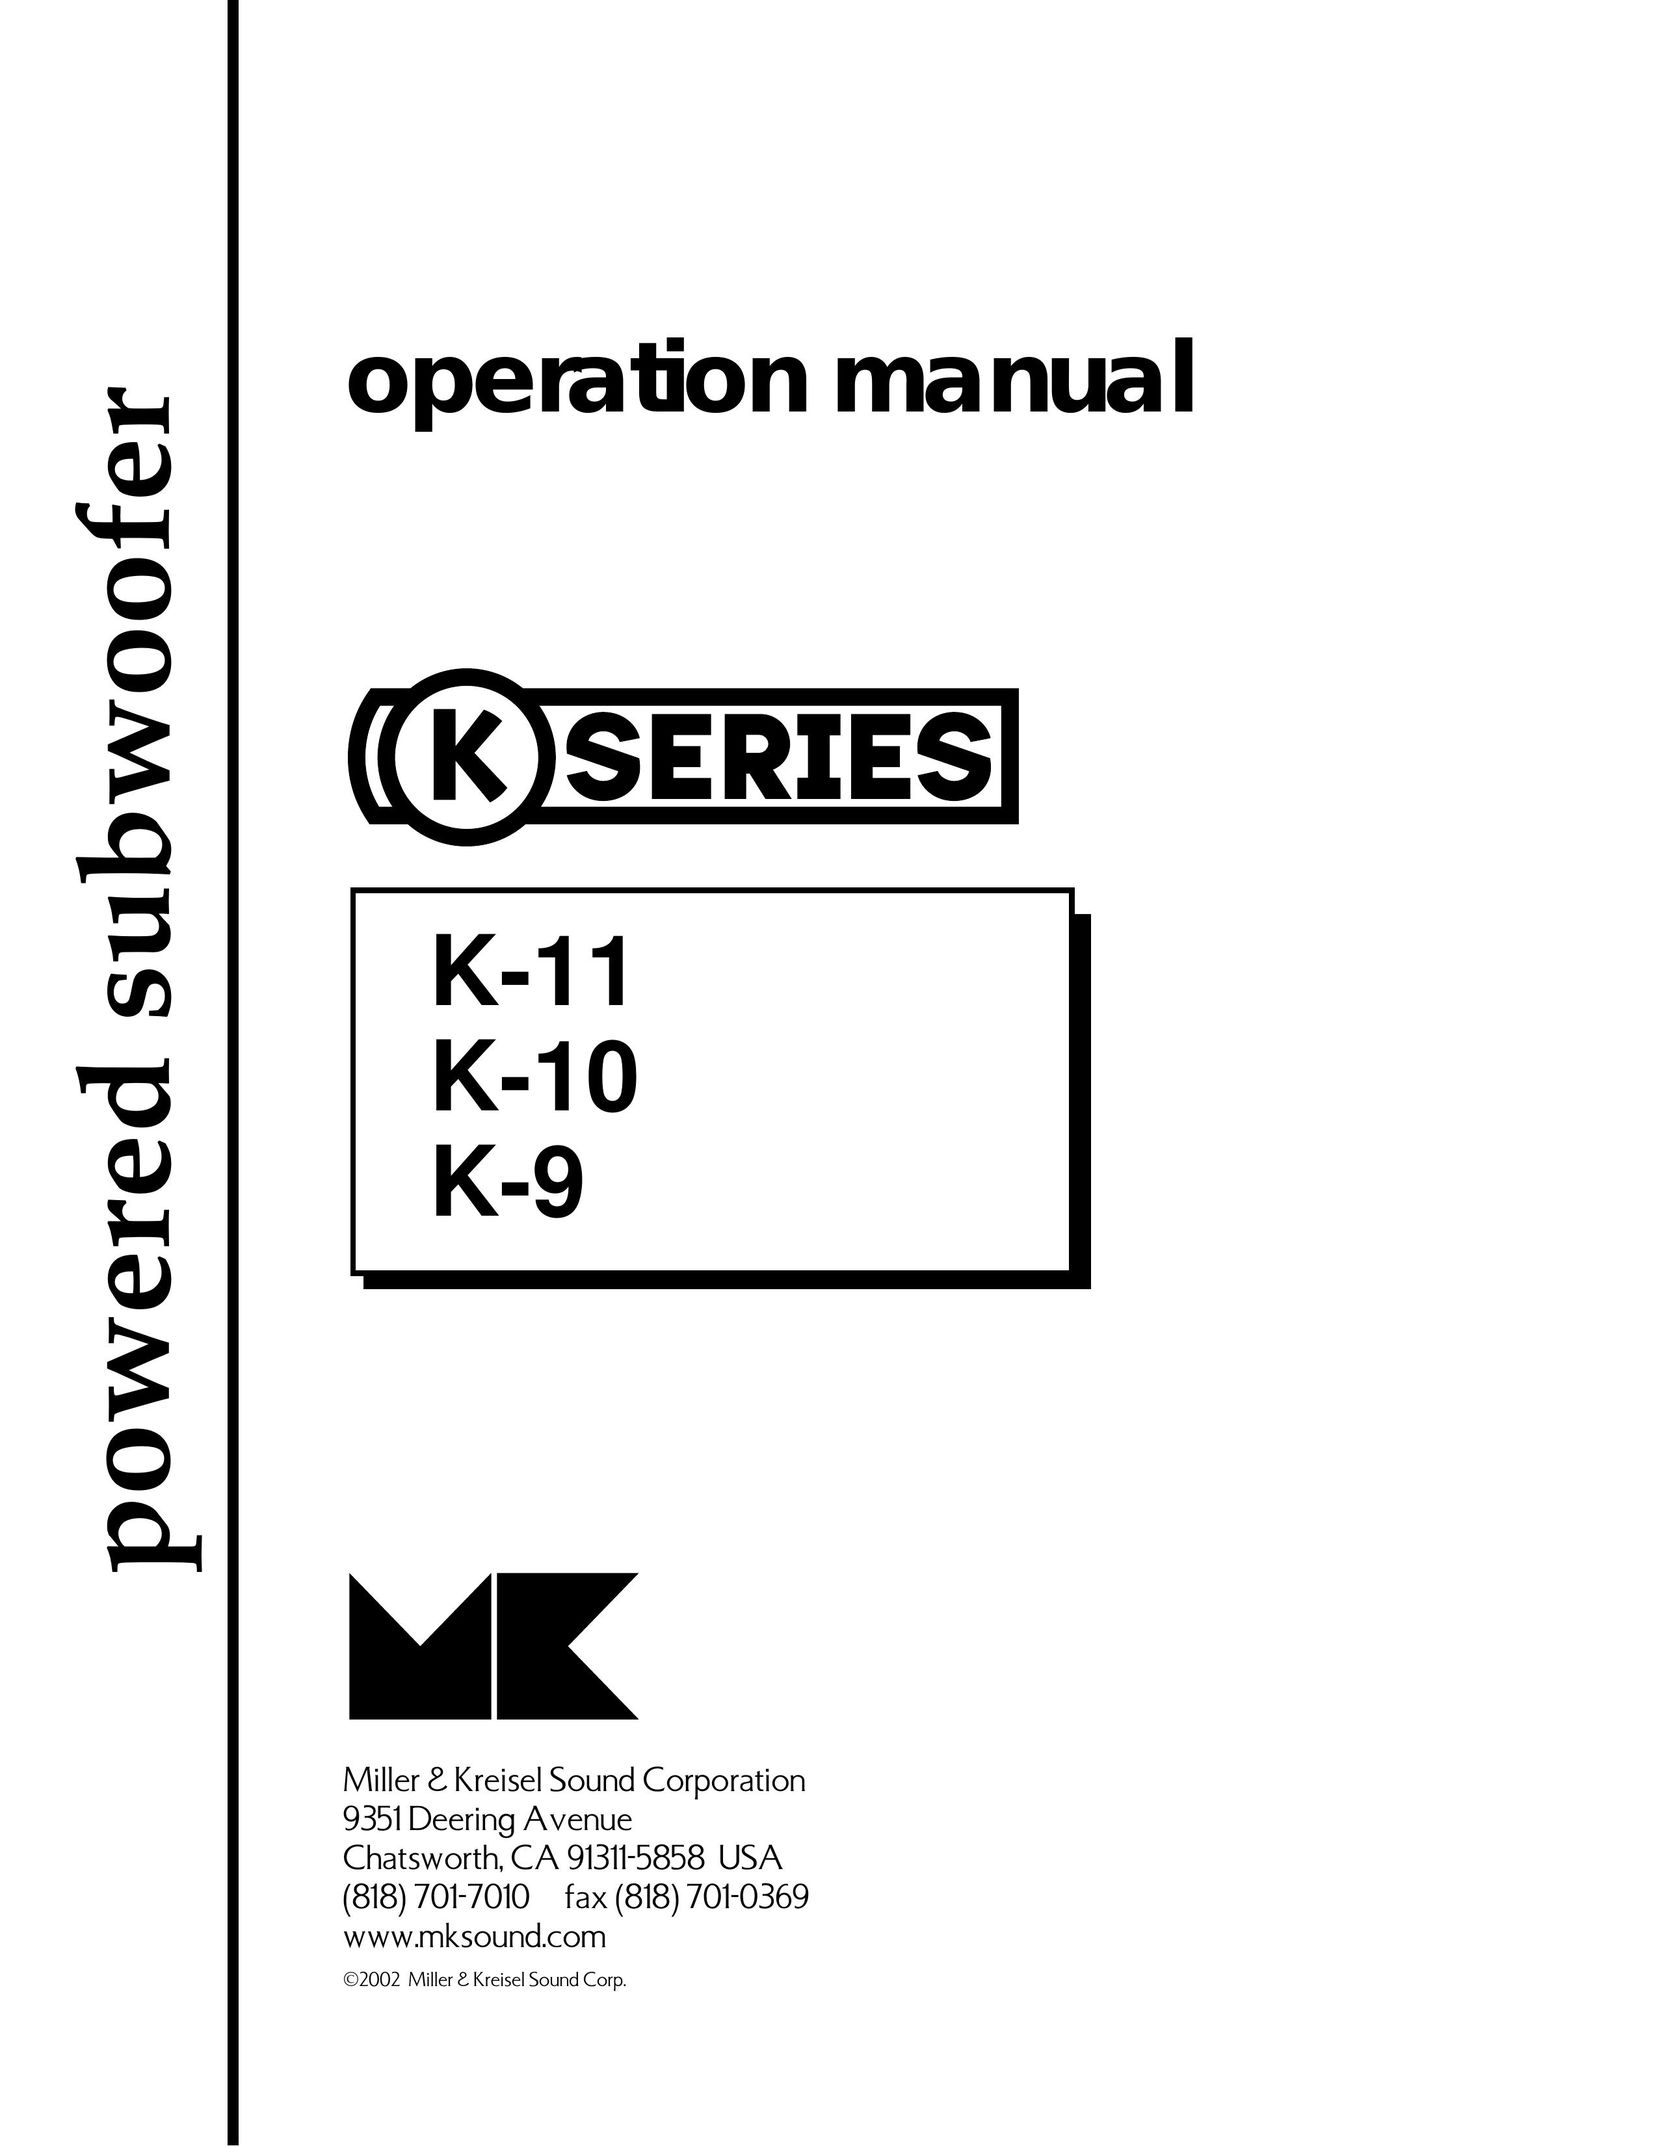 MK Sound K-9 Speaker User Manual